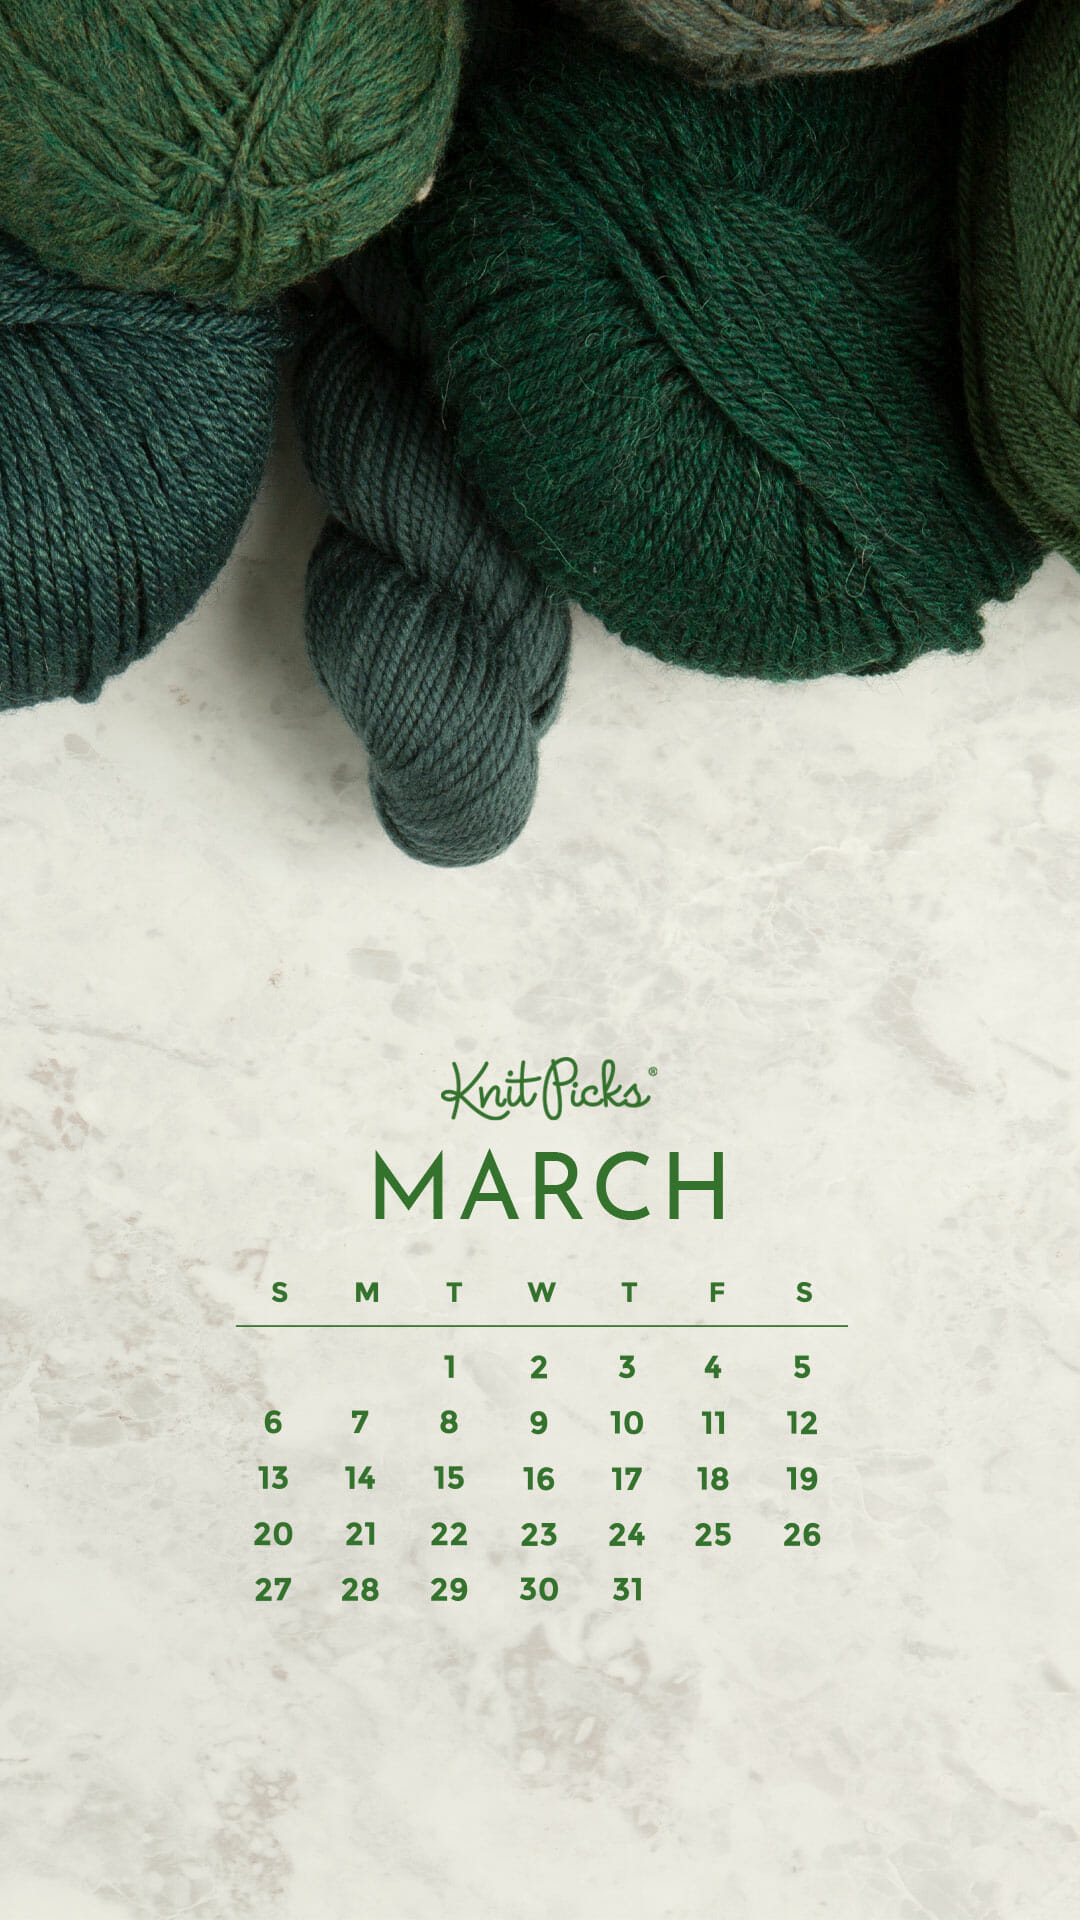 Tải về miễn phí lịch tháng 3 năm 2022 từ Blog Đan móc nhân viên KnitPicks để trang trí cho căn phòng của bạn. Với những hình ảnh độc đáo được thêu bằng tay, lịch sẽ thật sự là một tác phẩm nghệ thuật. Không chỉ để xem ngày tháng, lịch còn là món đồ trang trí dễ thương cho ngôi nhà của bạn.